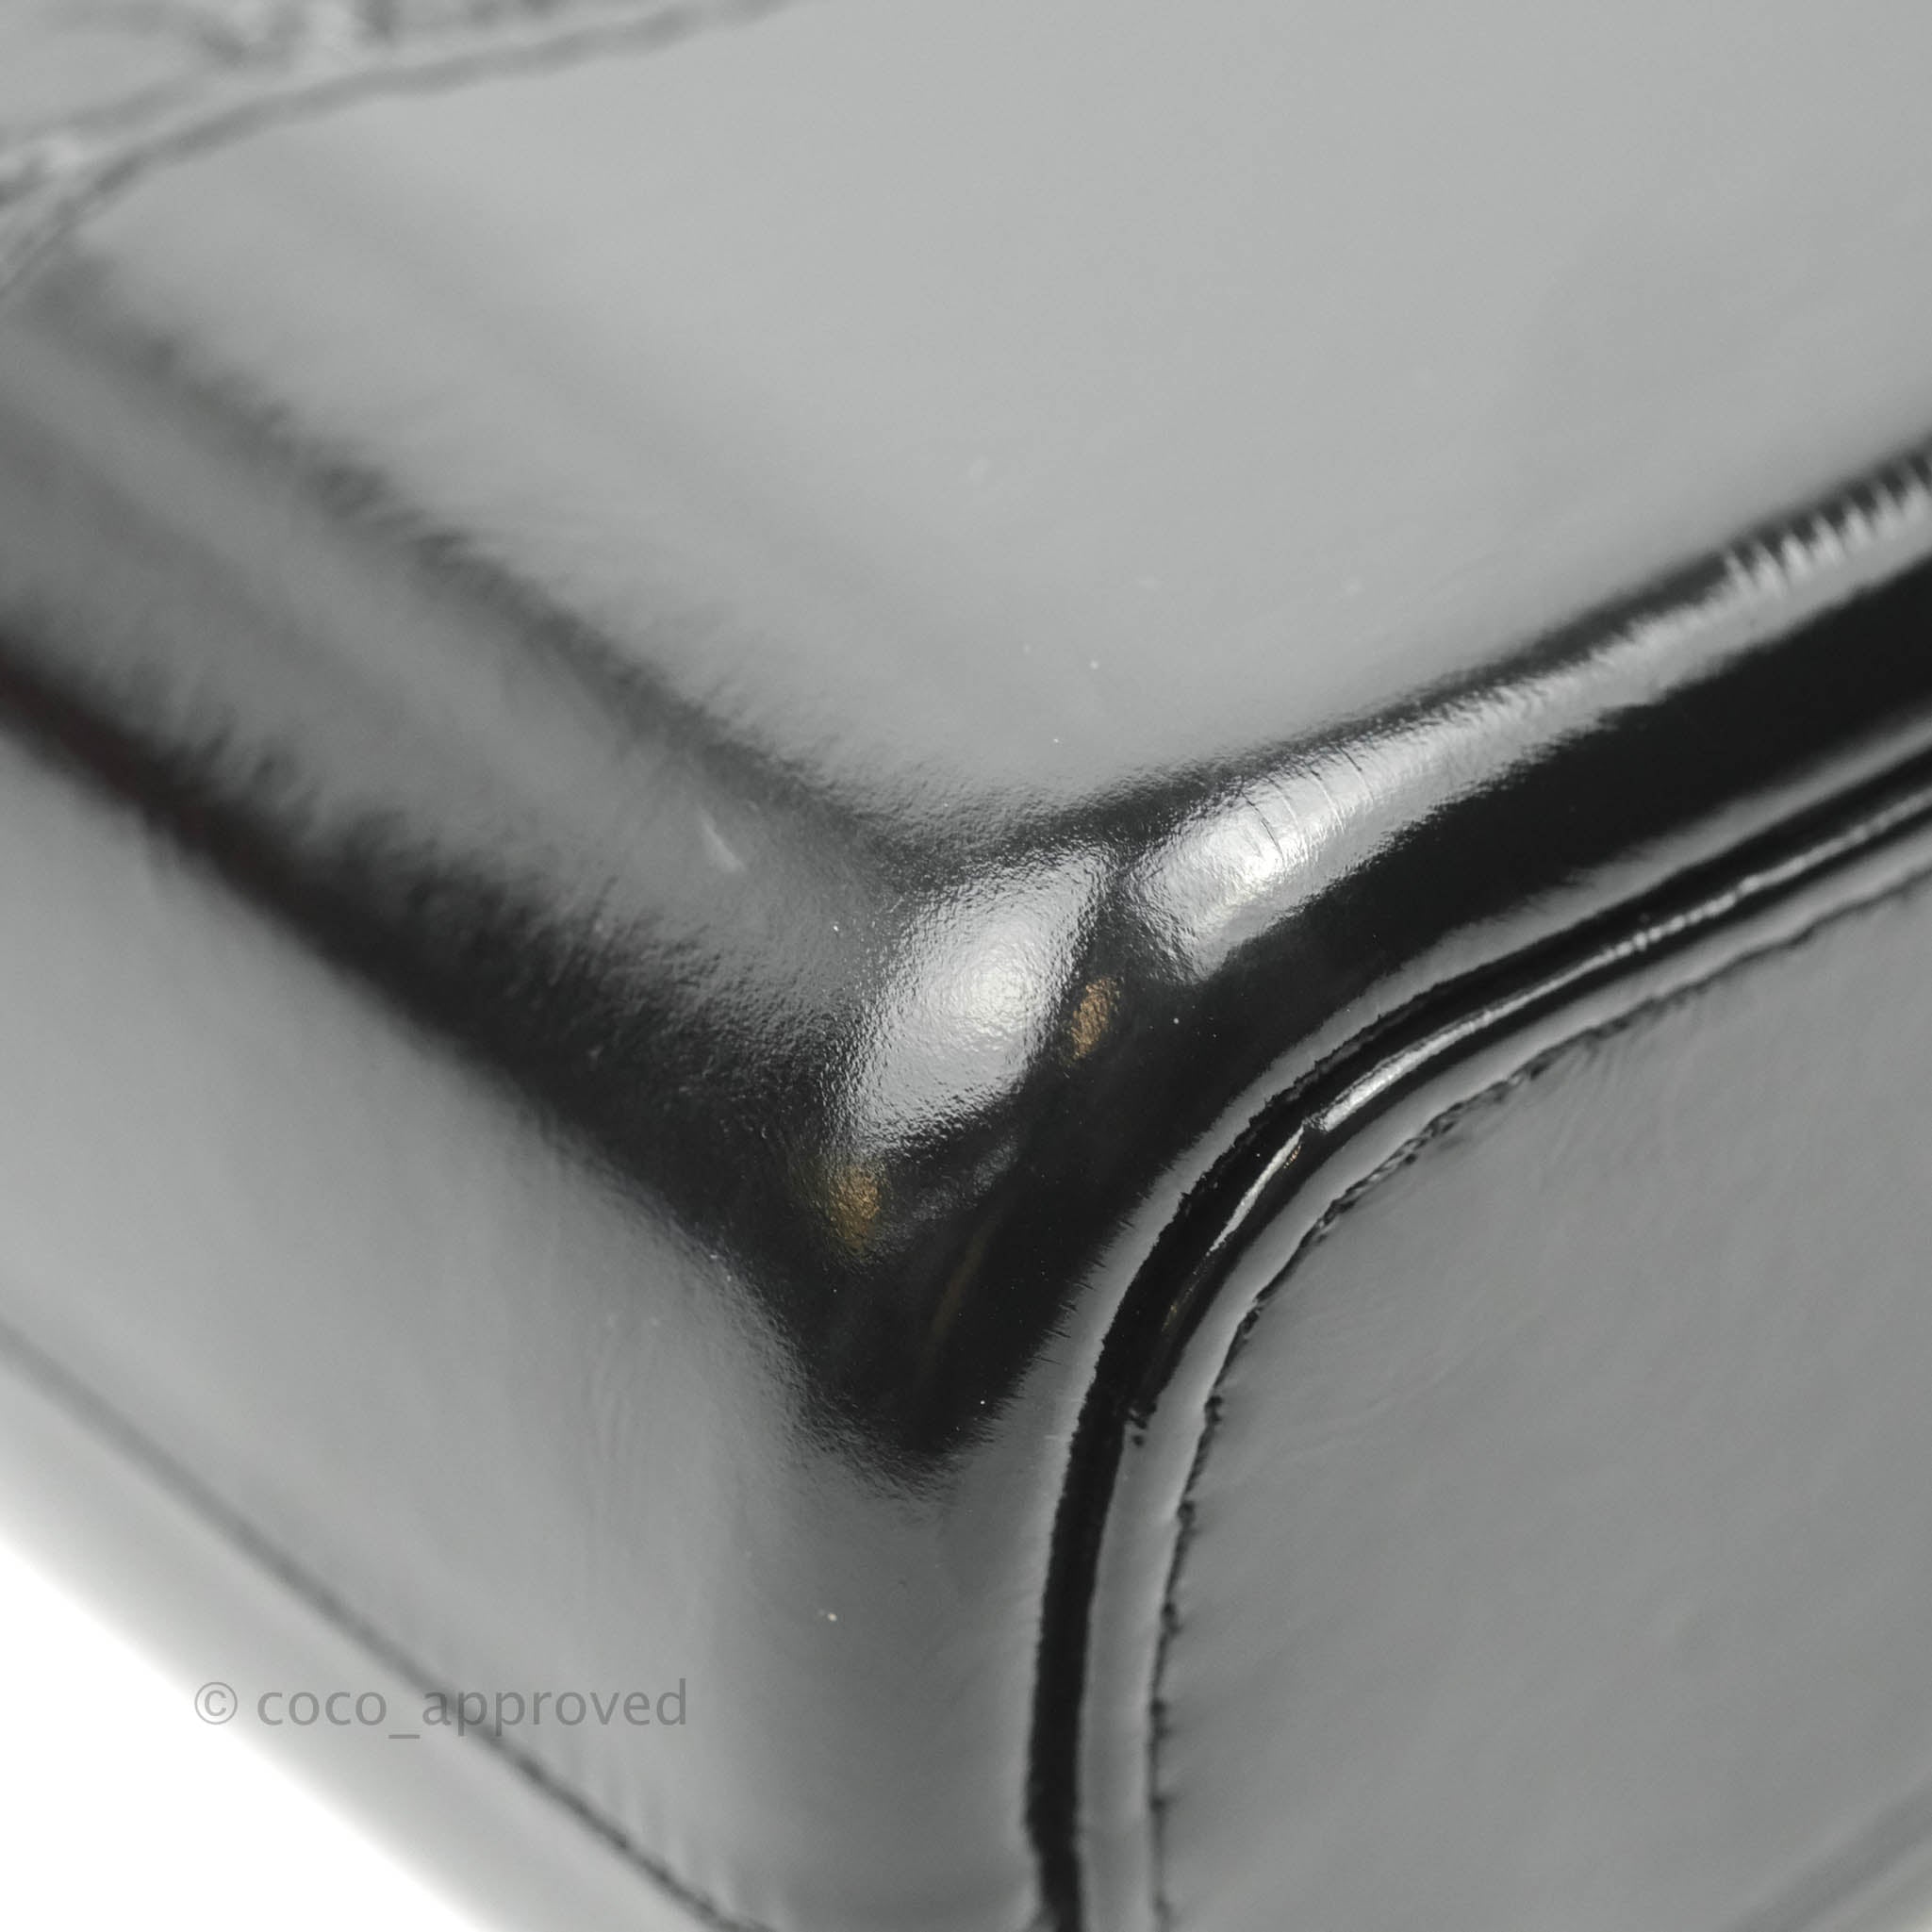 Chanel Black CC Gabrielle Medium Bag – The Closet